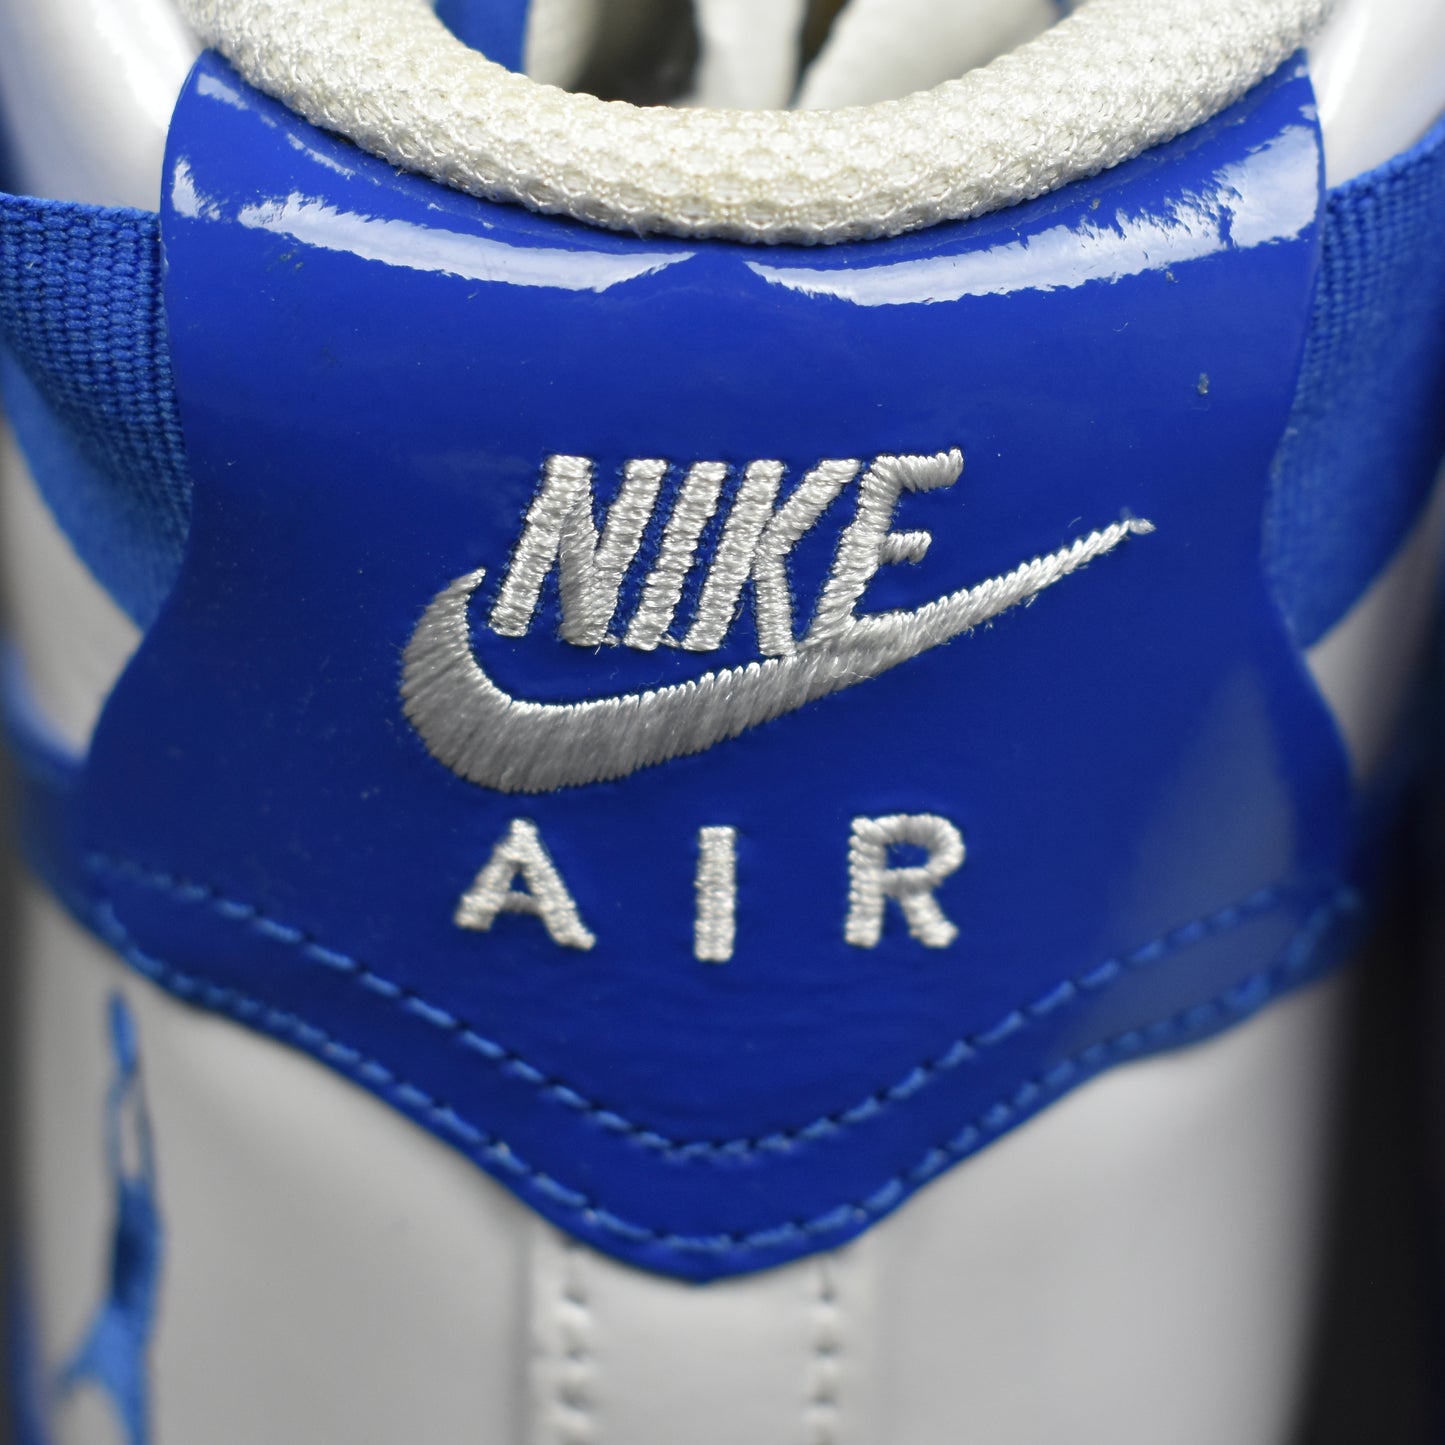 Nike x NBA - Air Force 1 High Retro CT16 QS 'Sheed'